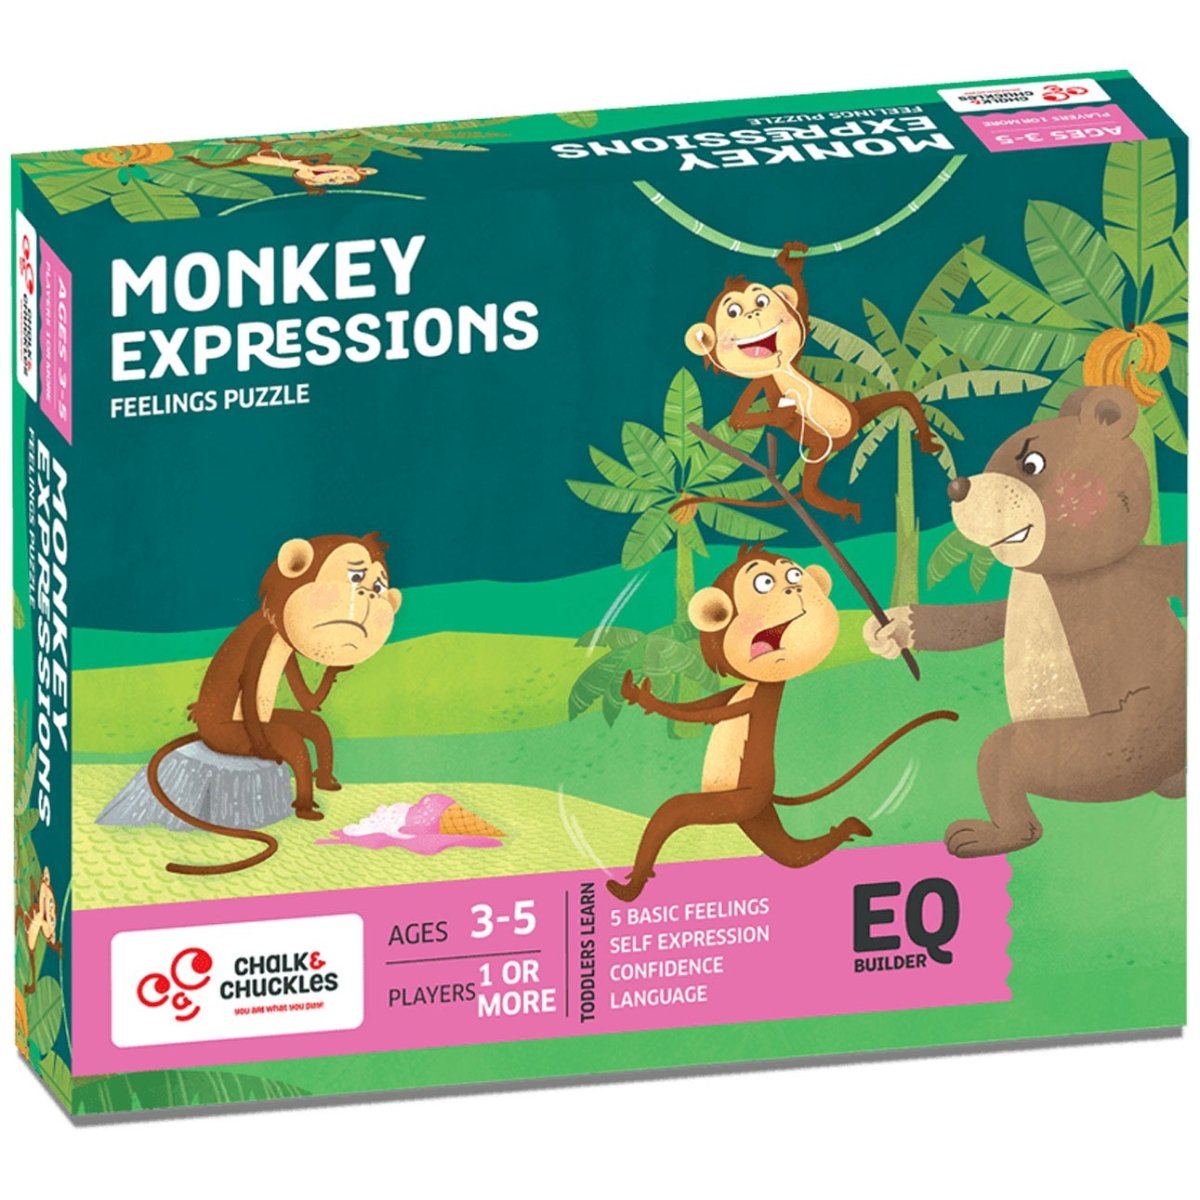 ZCC Monkey Expressions - Feelings puzzle, Age 3-5 freeshipping - Zigyasaw